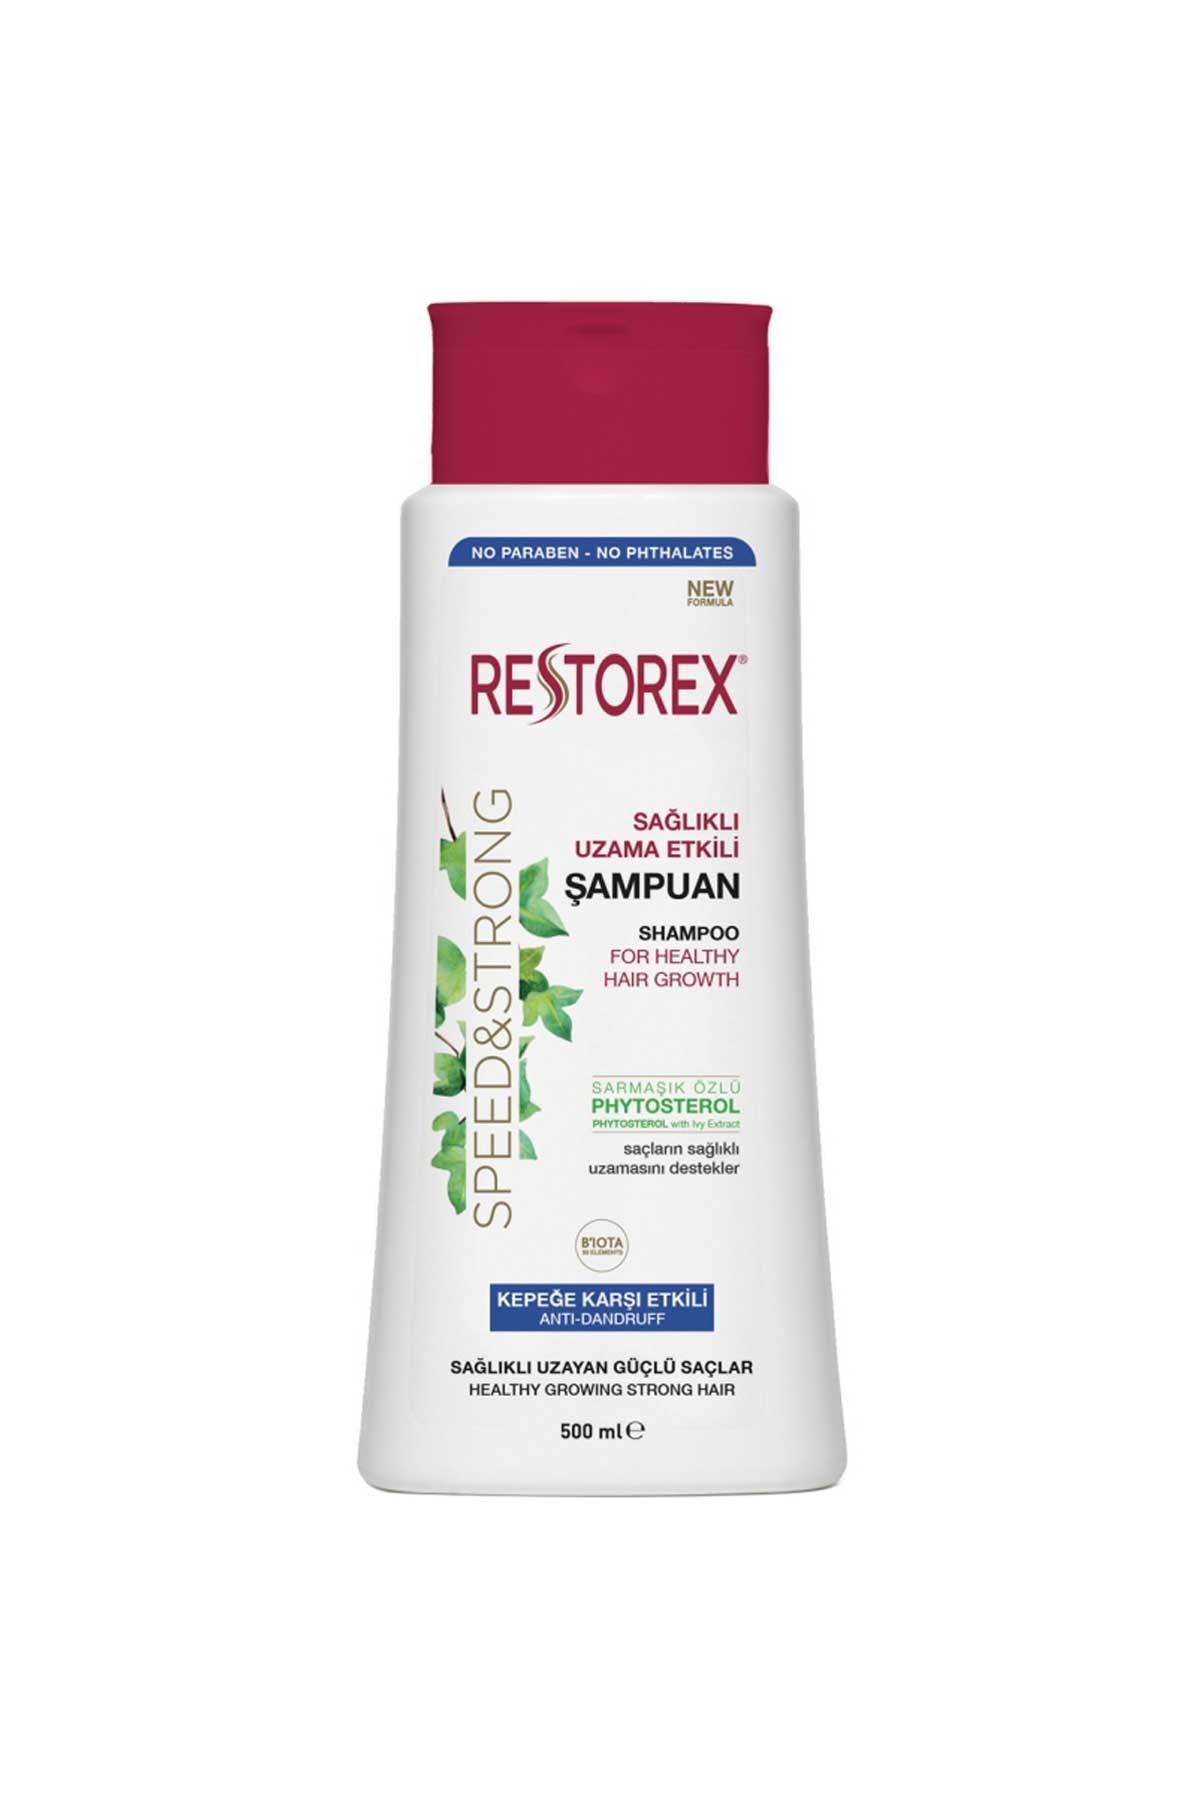 Restorex Sağlıklı Uzama Etkili Şampuan Kepeğe Karşı Etkili 500 Ml - Andia